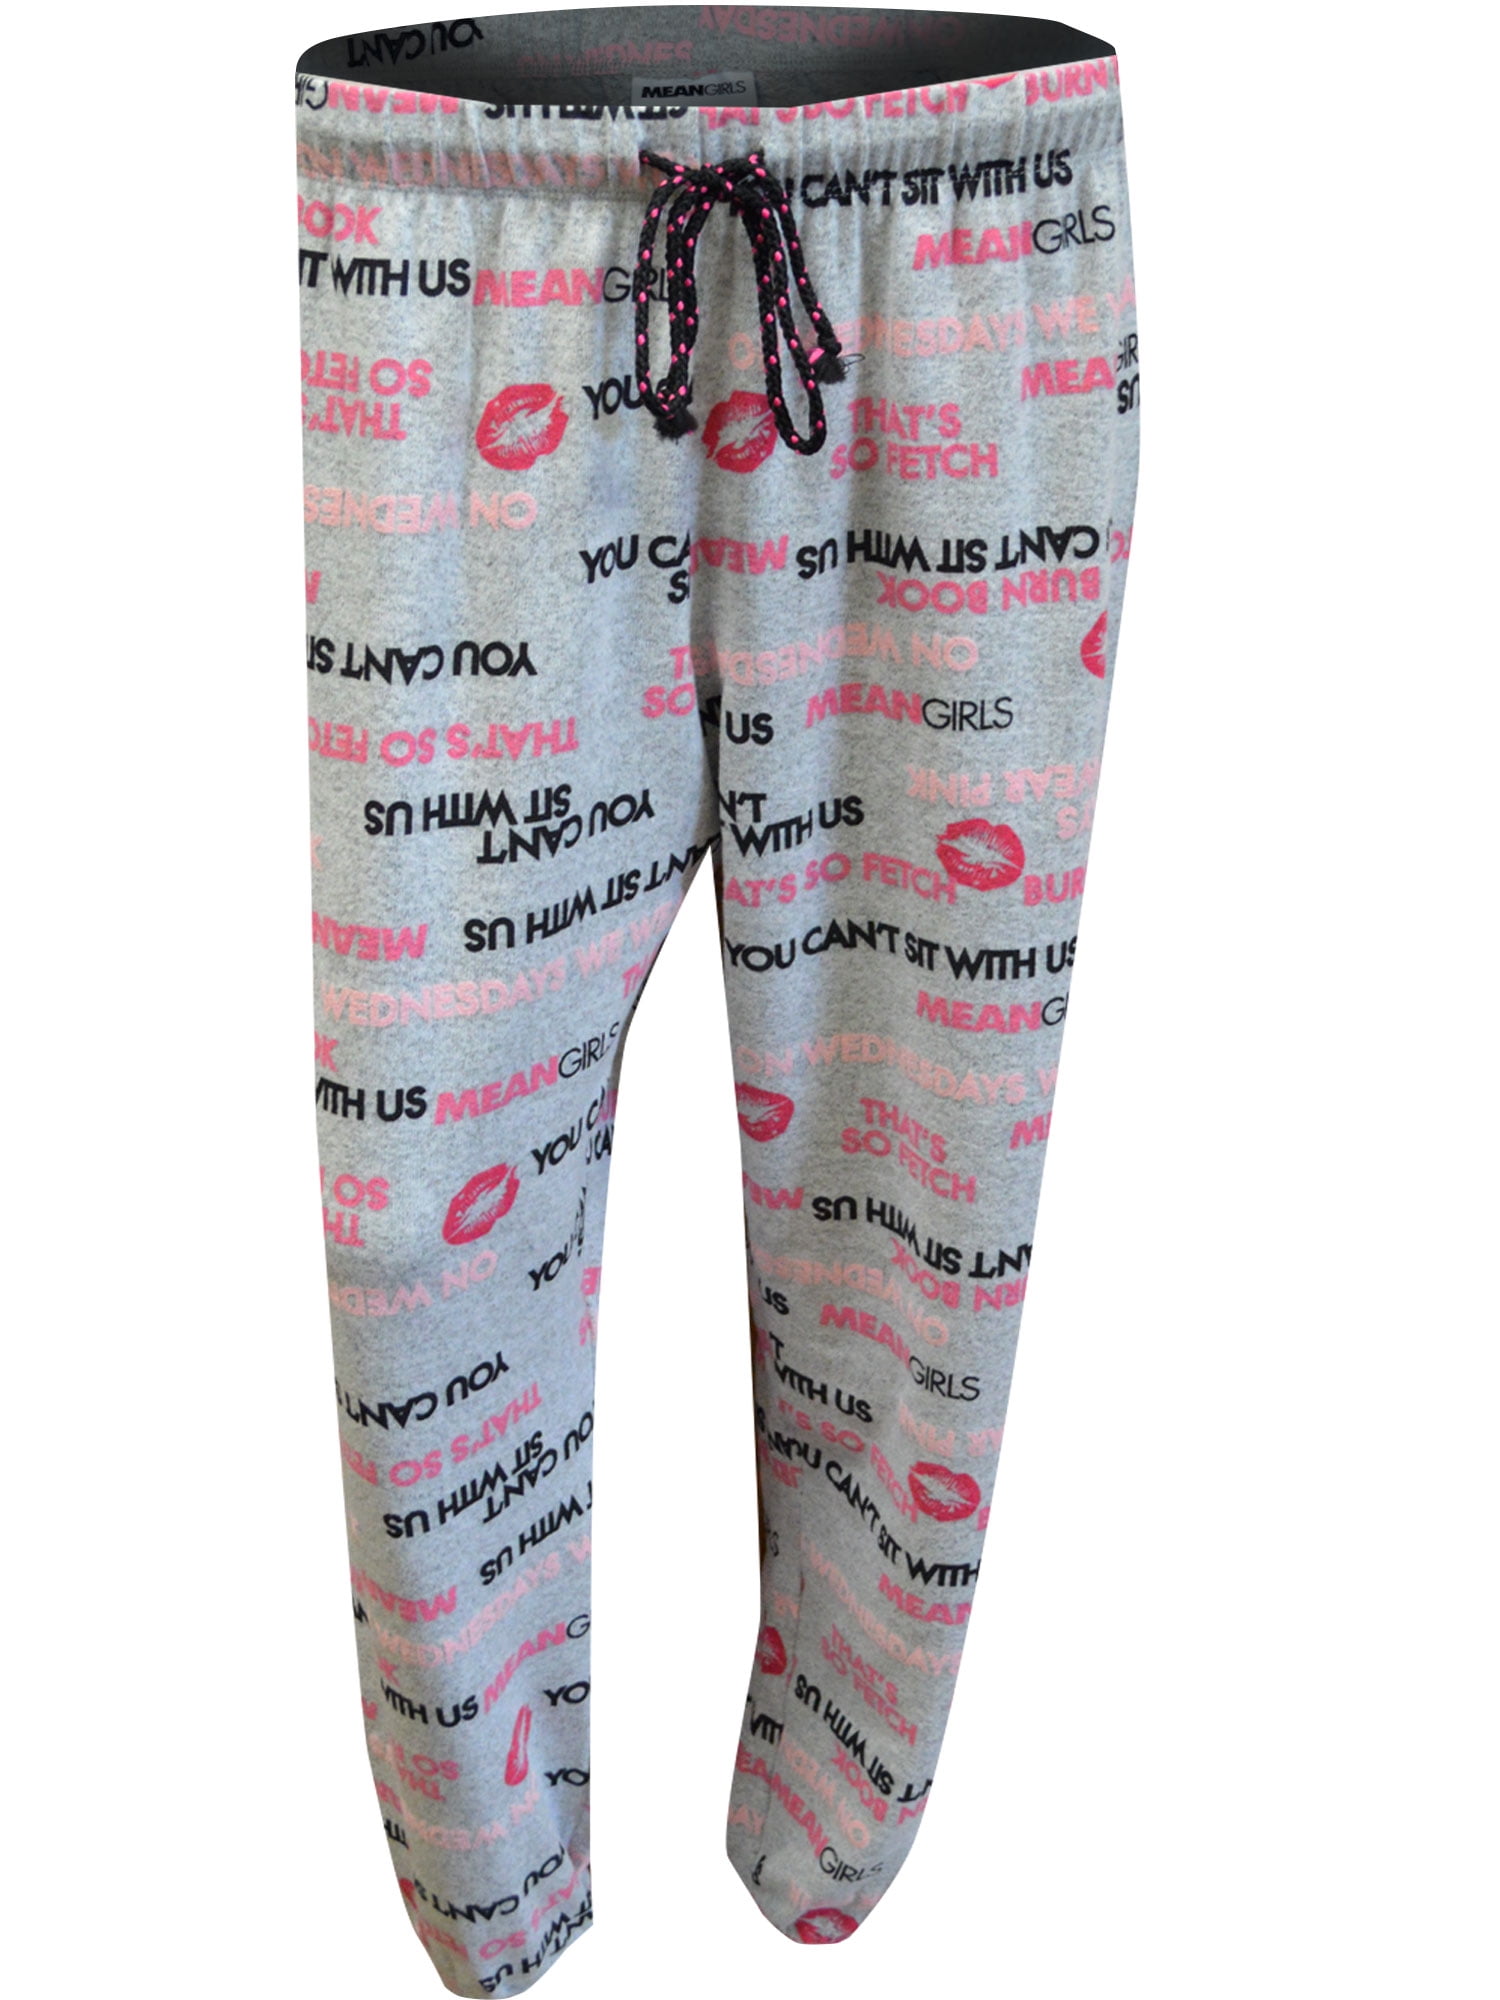 Women's Mean Girls Pajama Pants